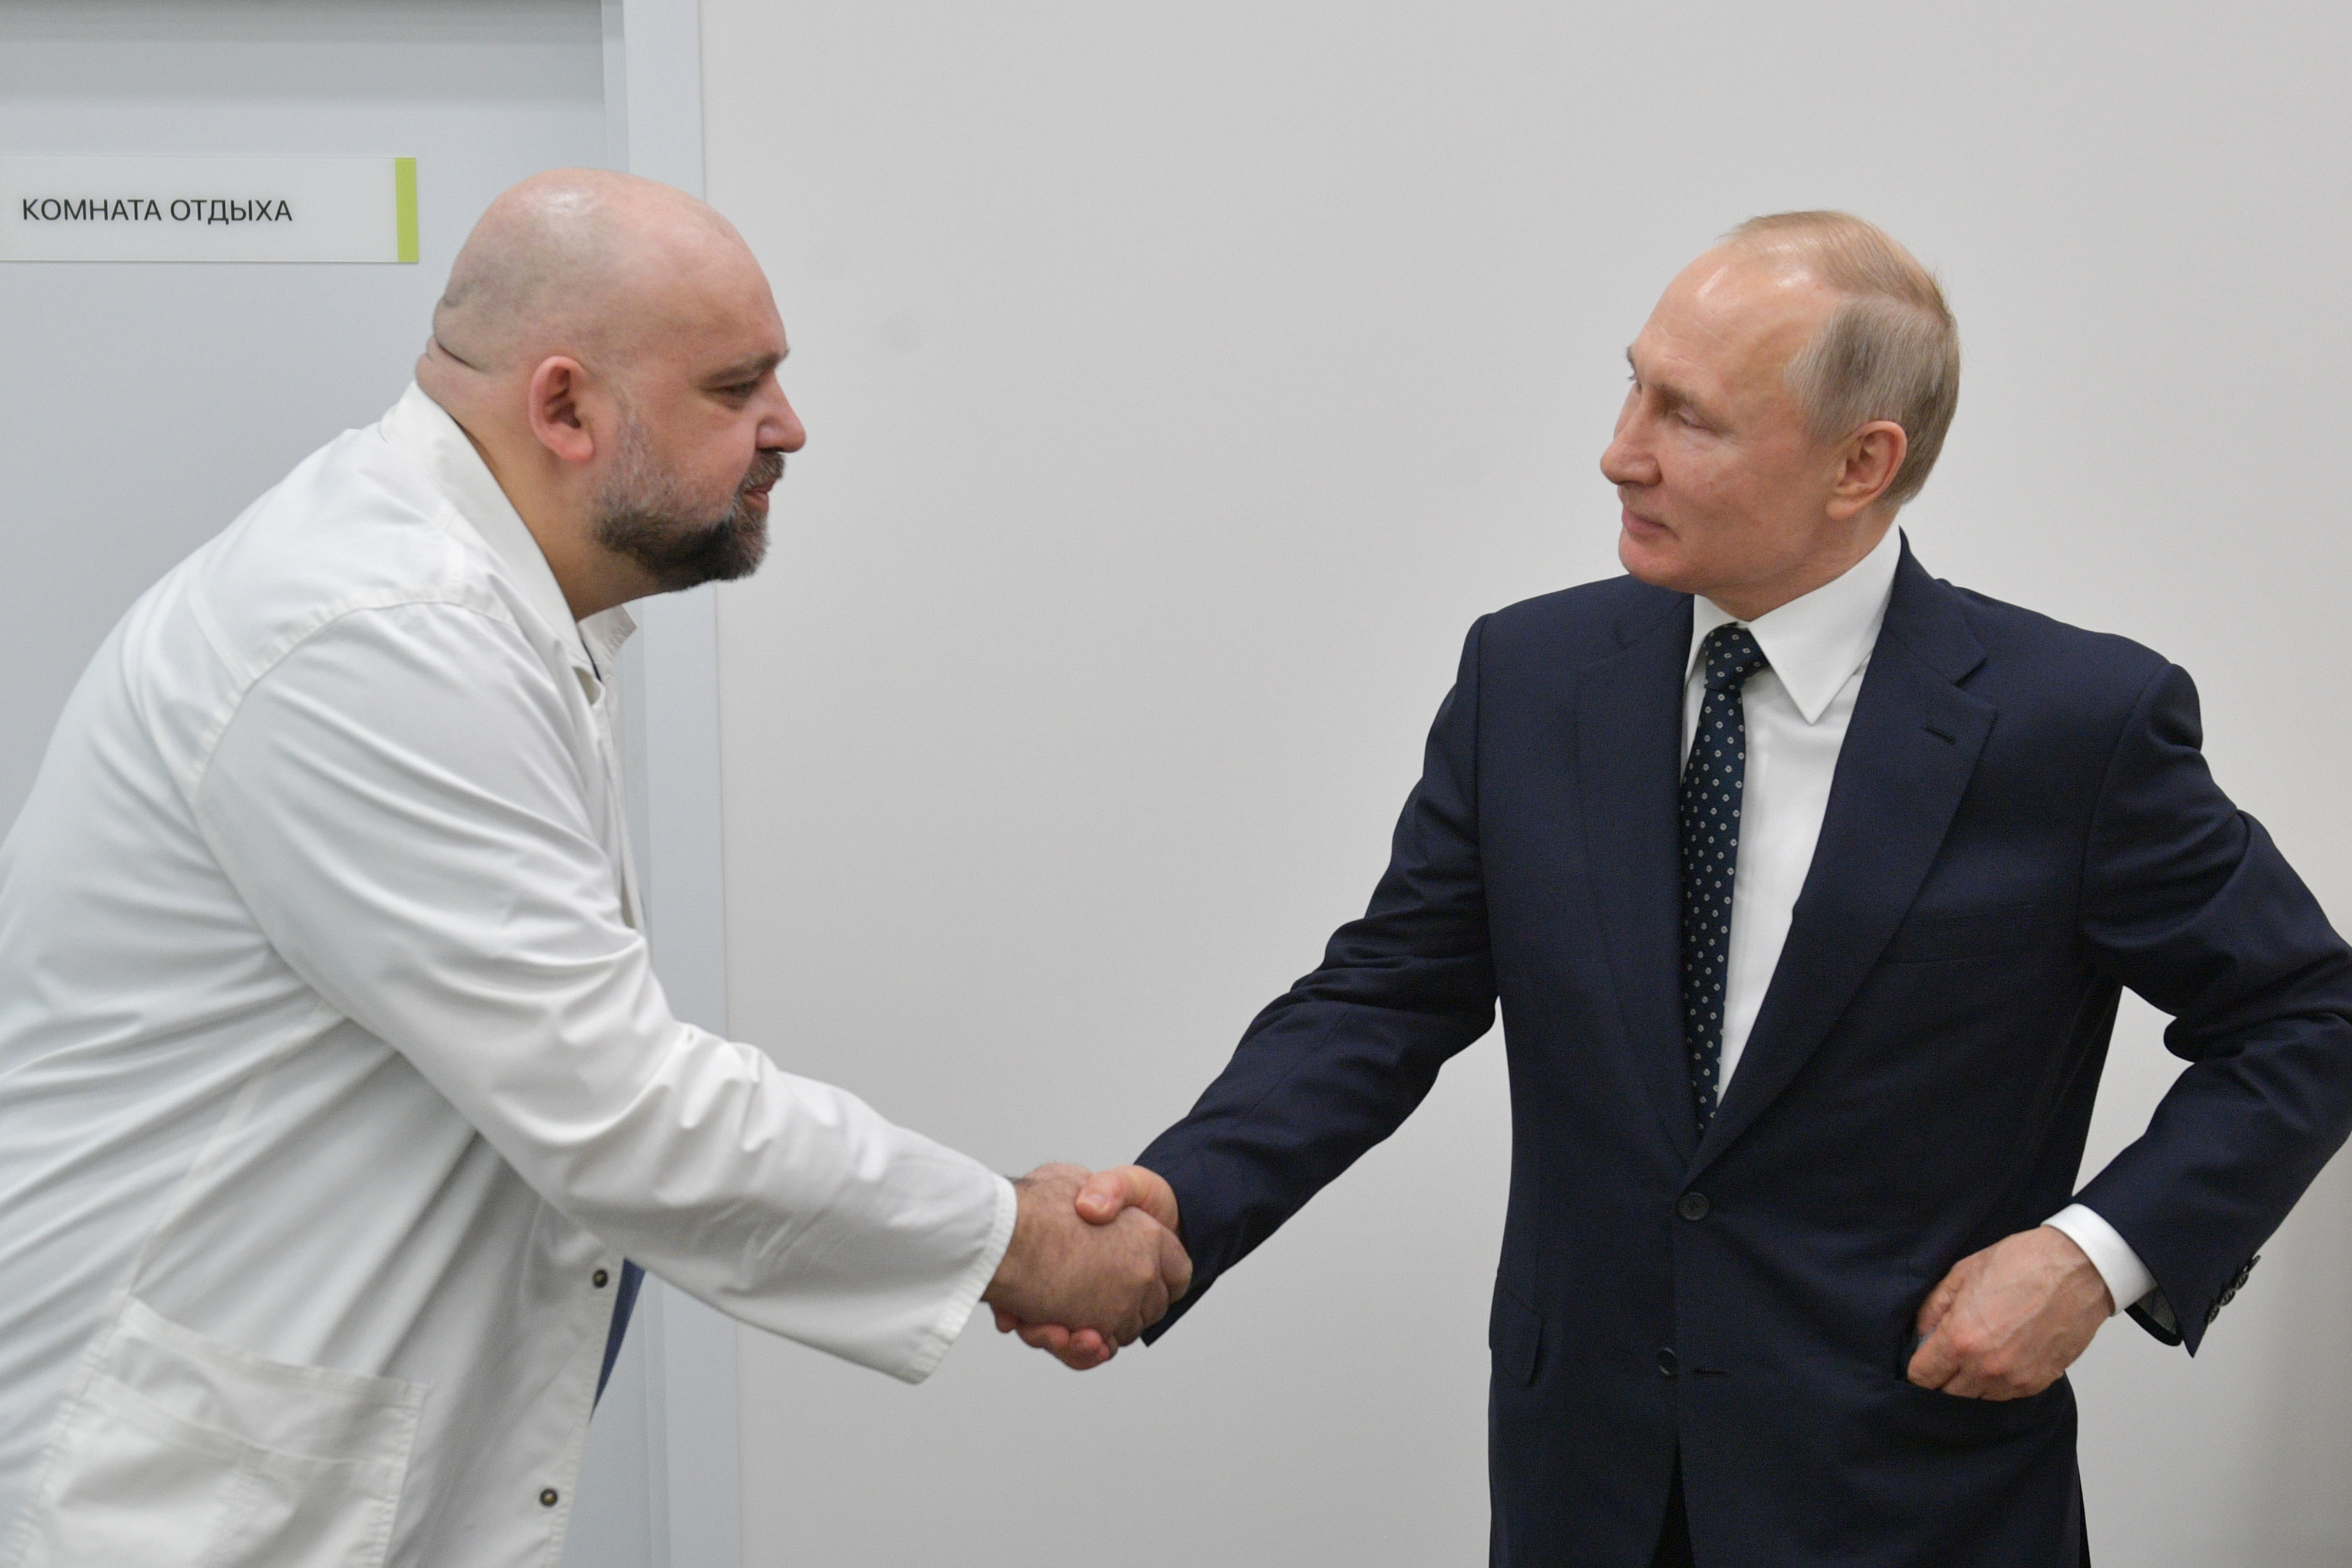 Putyin hátrább lépett, másra hagyja a járvány kezelését